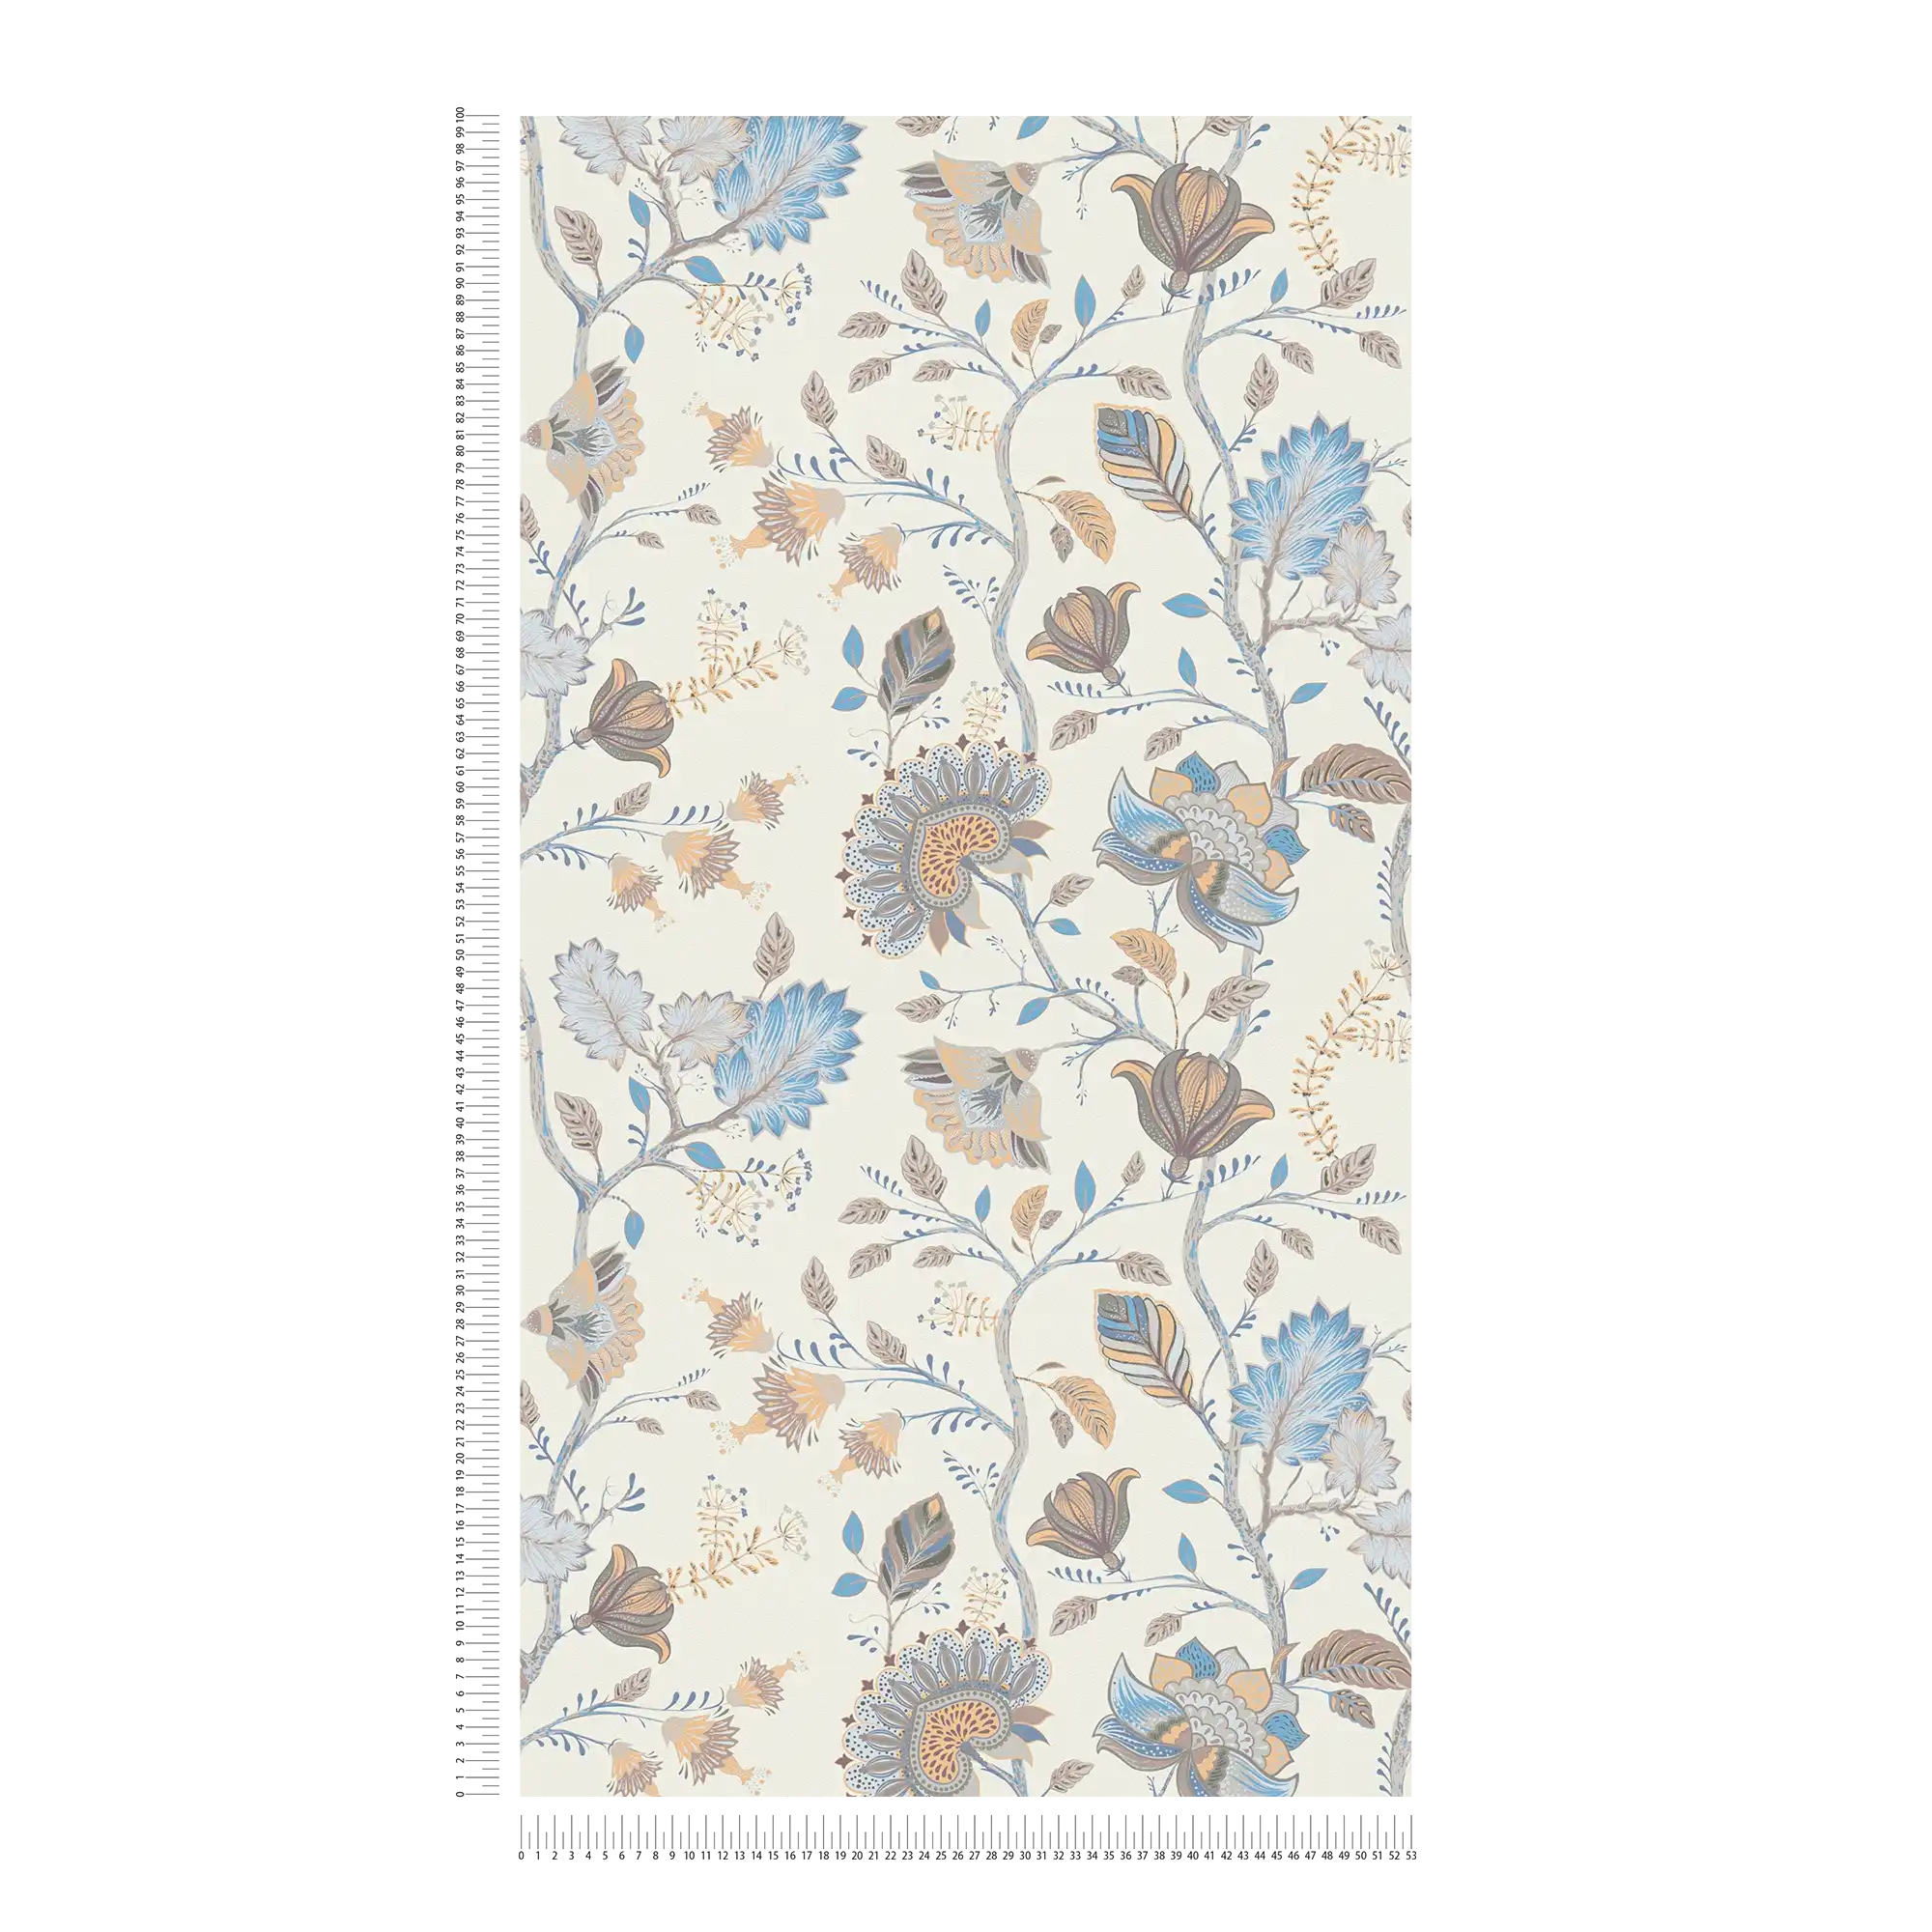             Papier peint intissé à motifs floraux - bleu, crème, gris
        